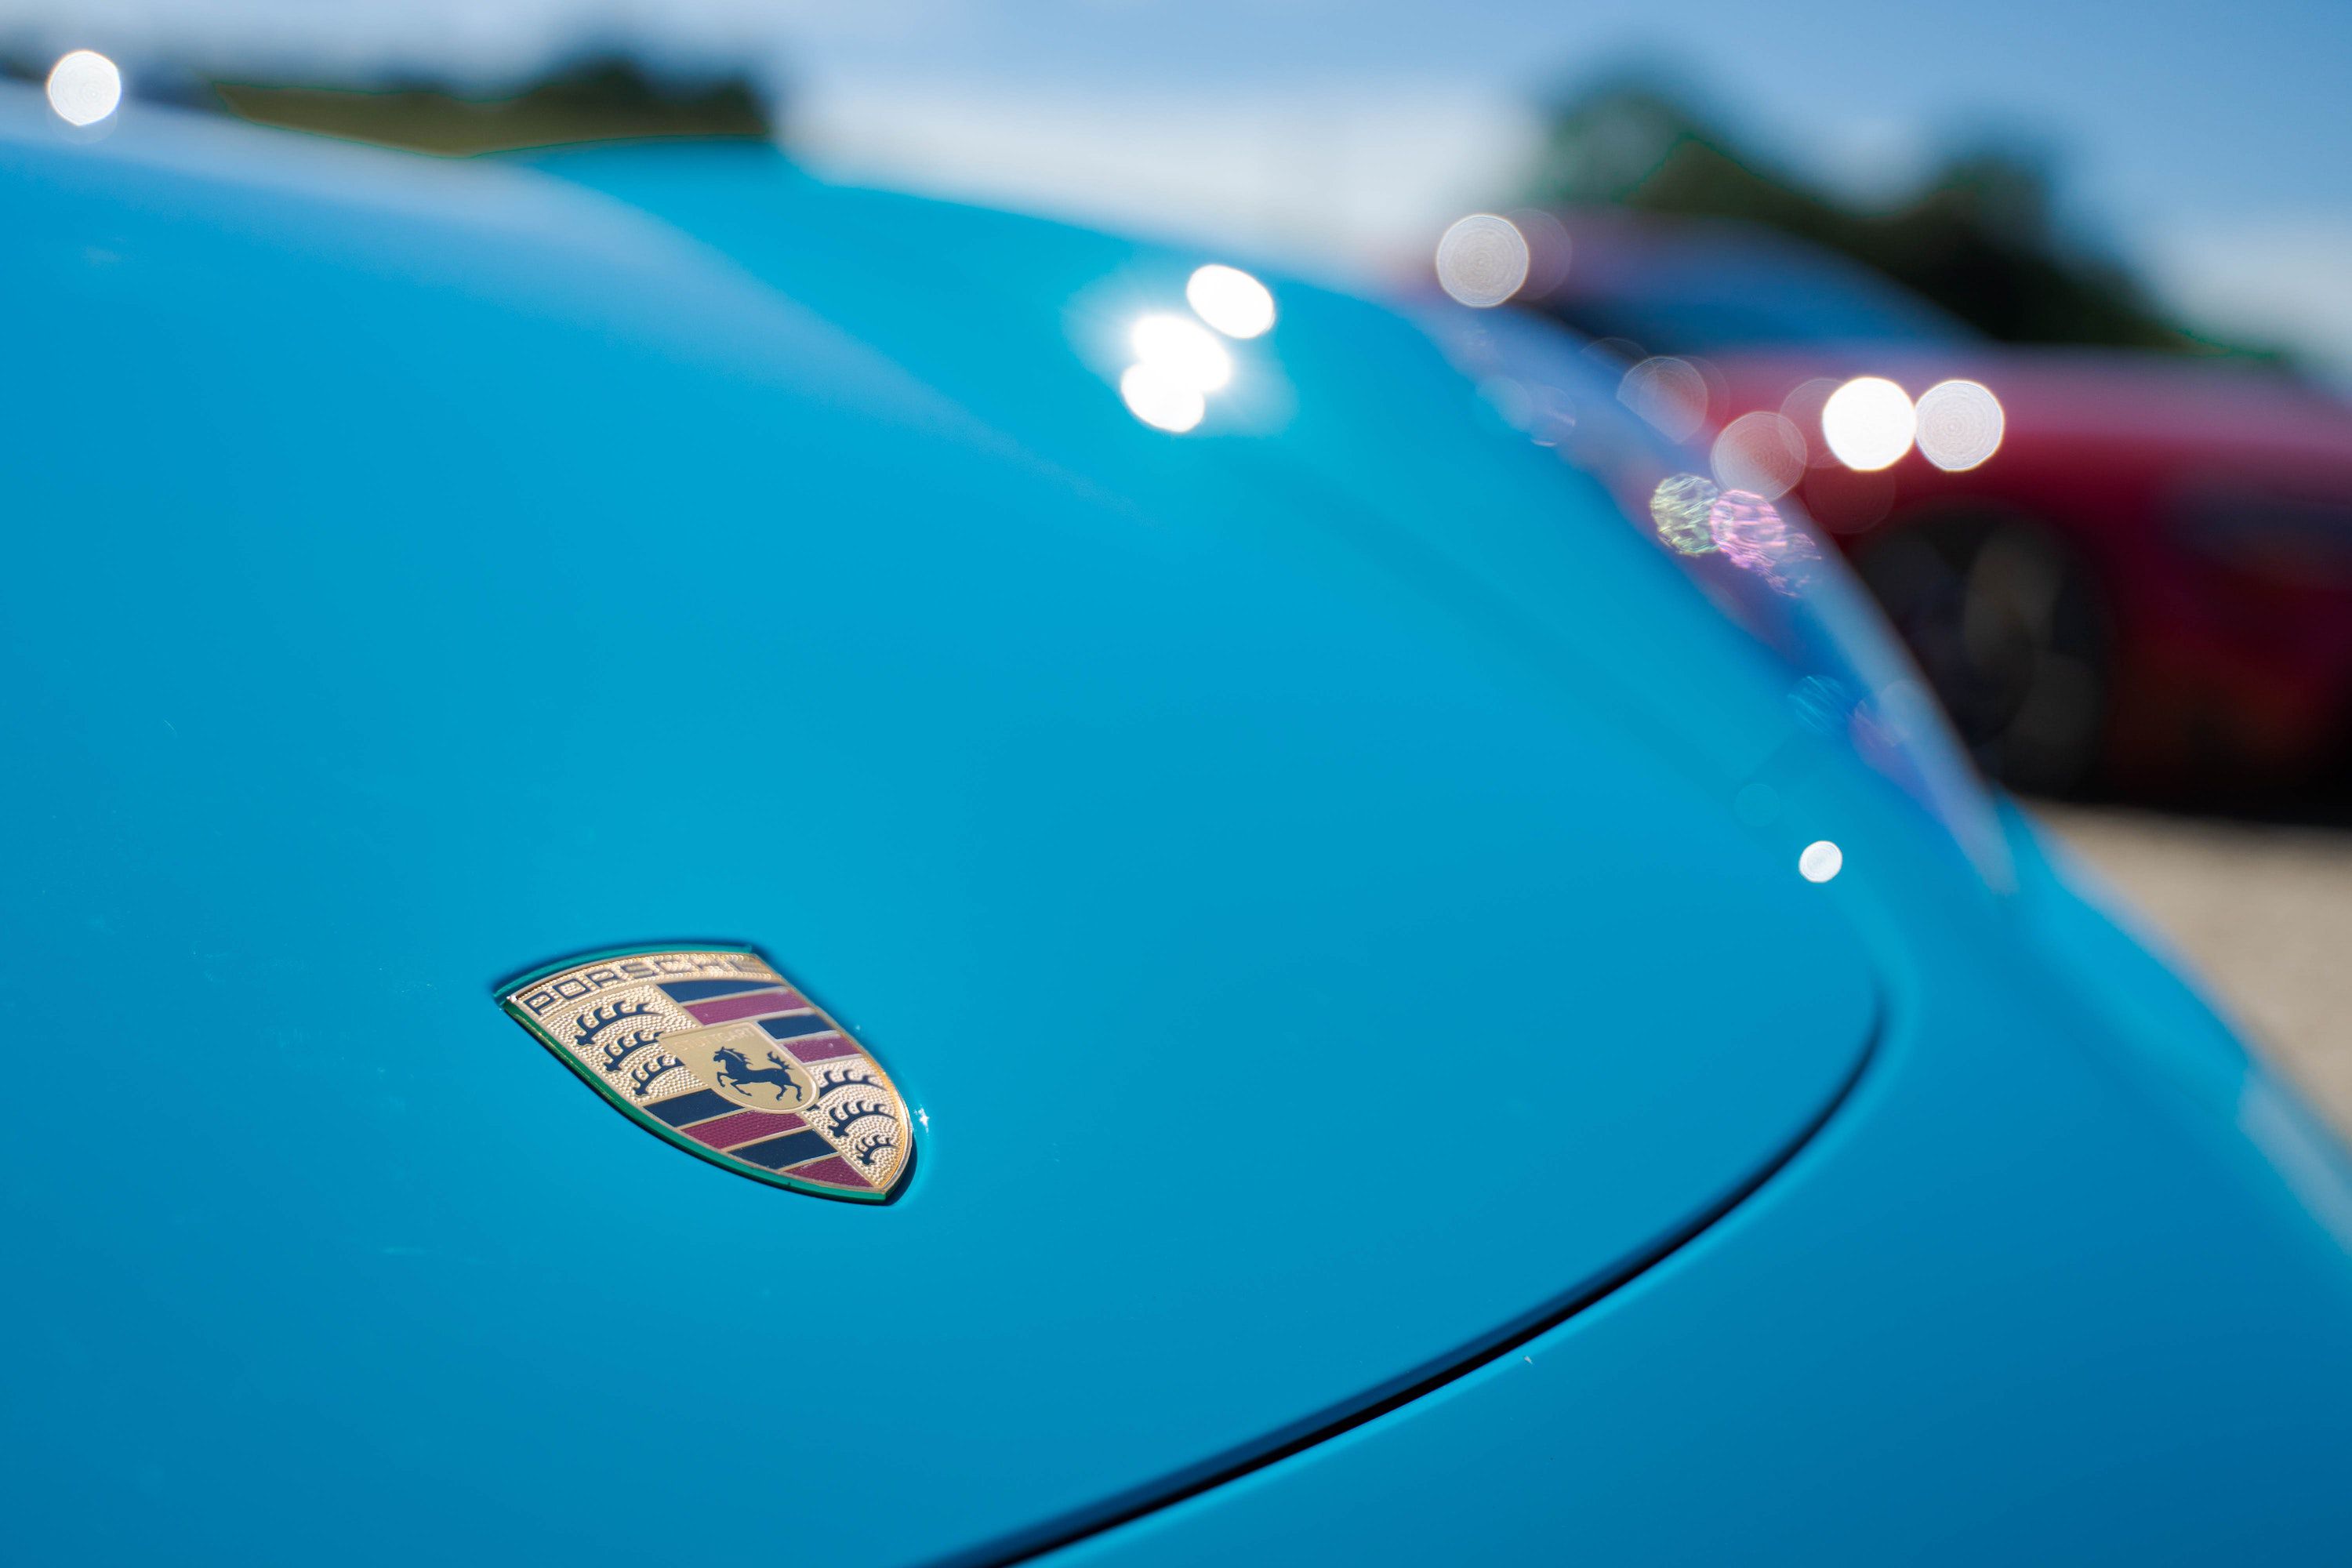 Blue bonnet of the Porsche Cayman 